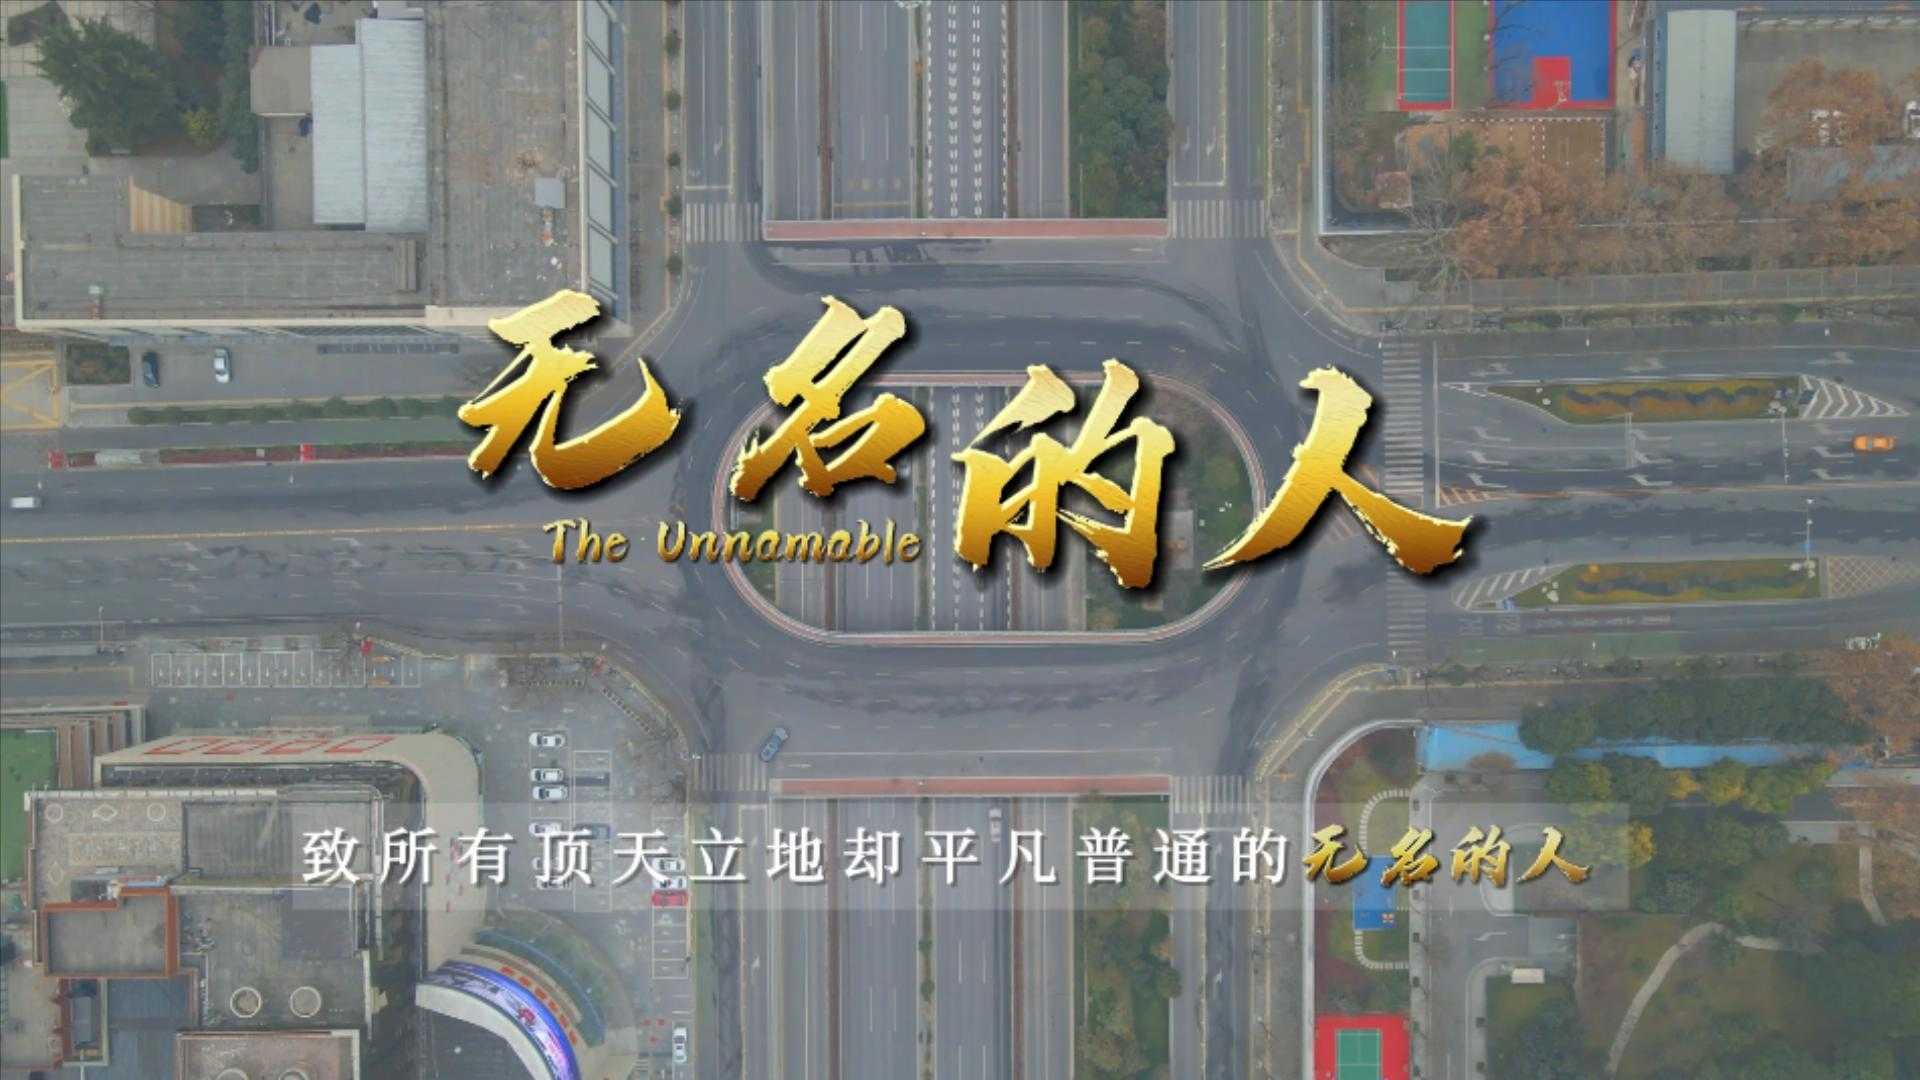 《无名的人》——陕西广电移动电视频道